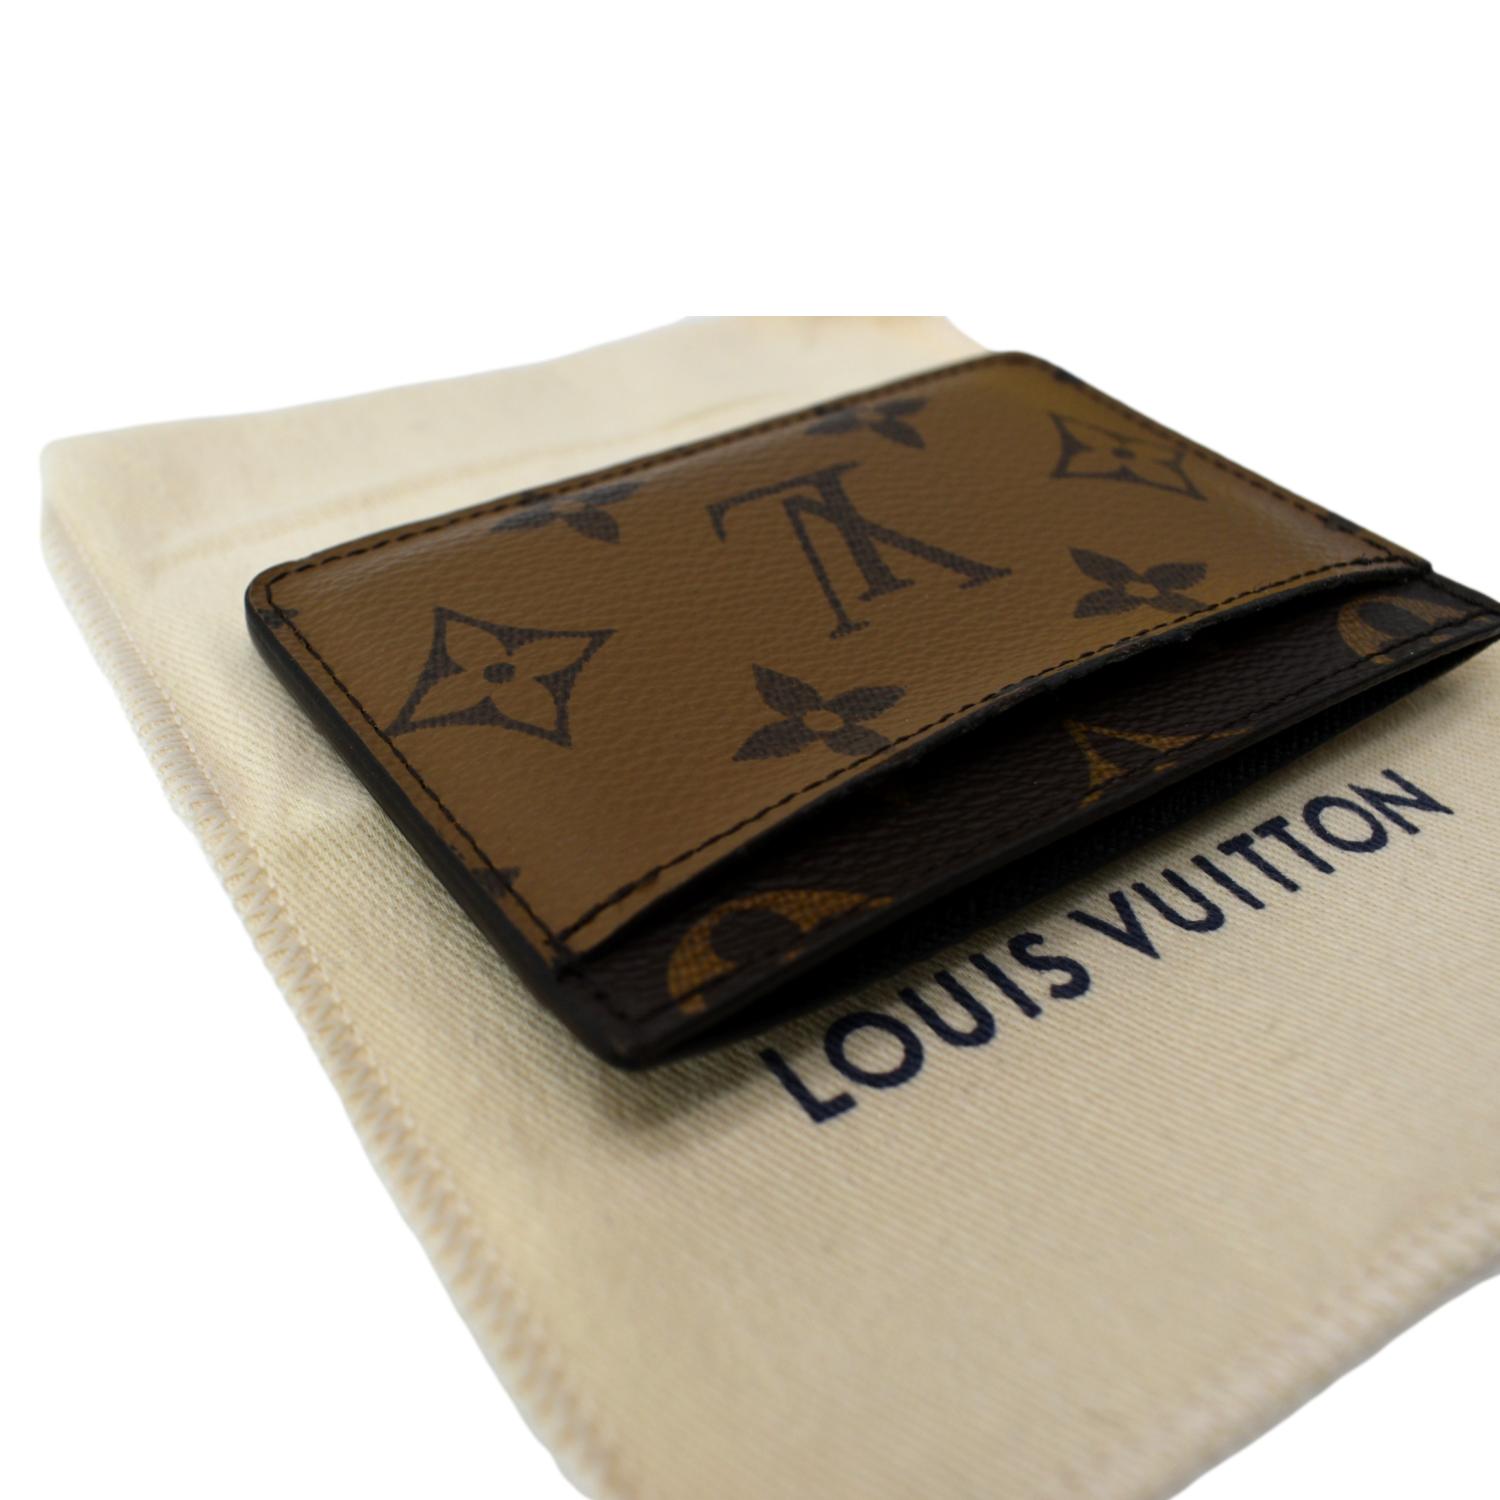 Shopbop Archive Louis Vuitton Card Holder, Monogram